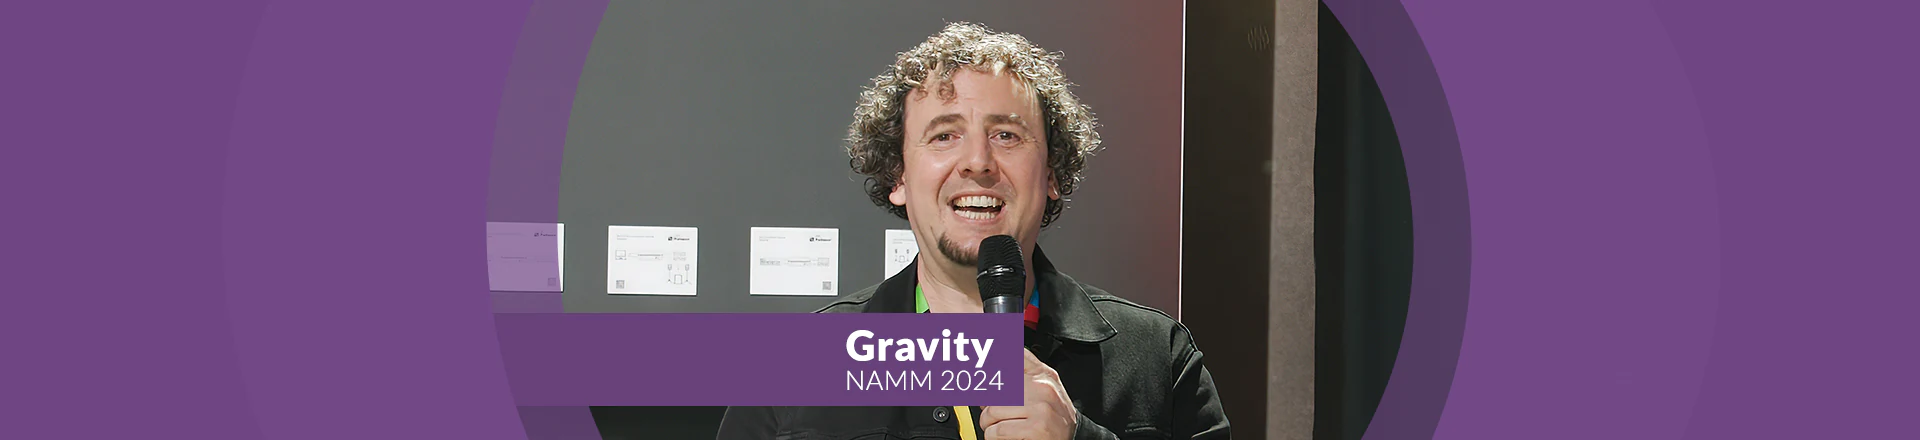 NAMM'24: Gravity Guitar Stands - rozjaśnią nie tylko twój sound!